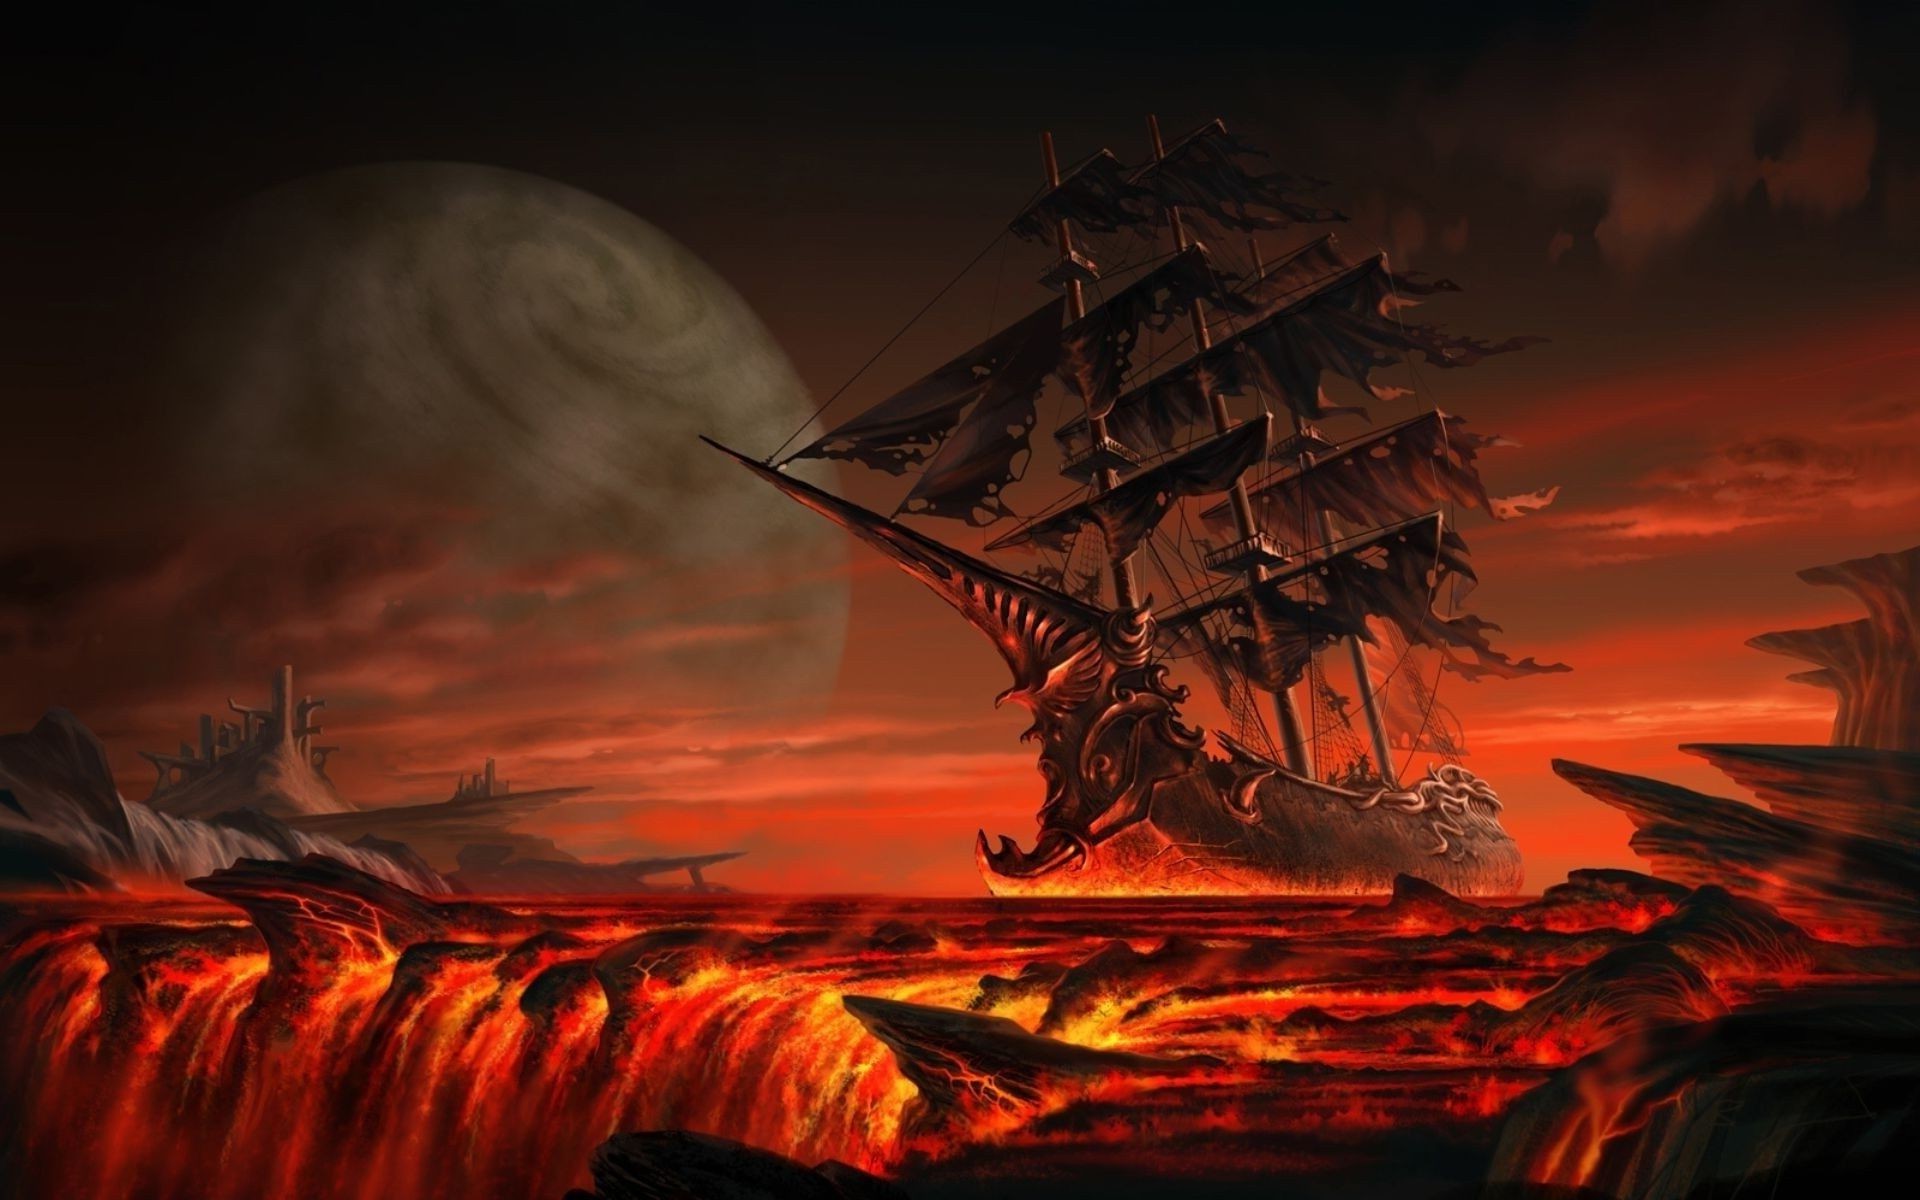 Fantasy Sunset Evening Dawn Art Landscape Light Water - Pirate Ships - HD Wallpaper 